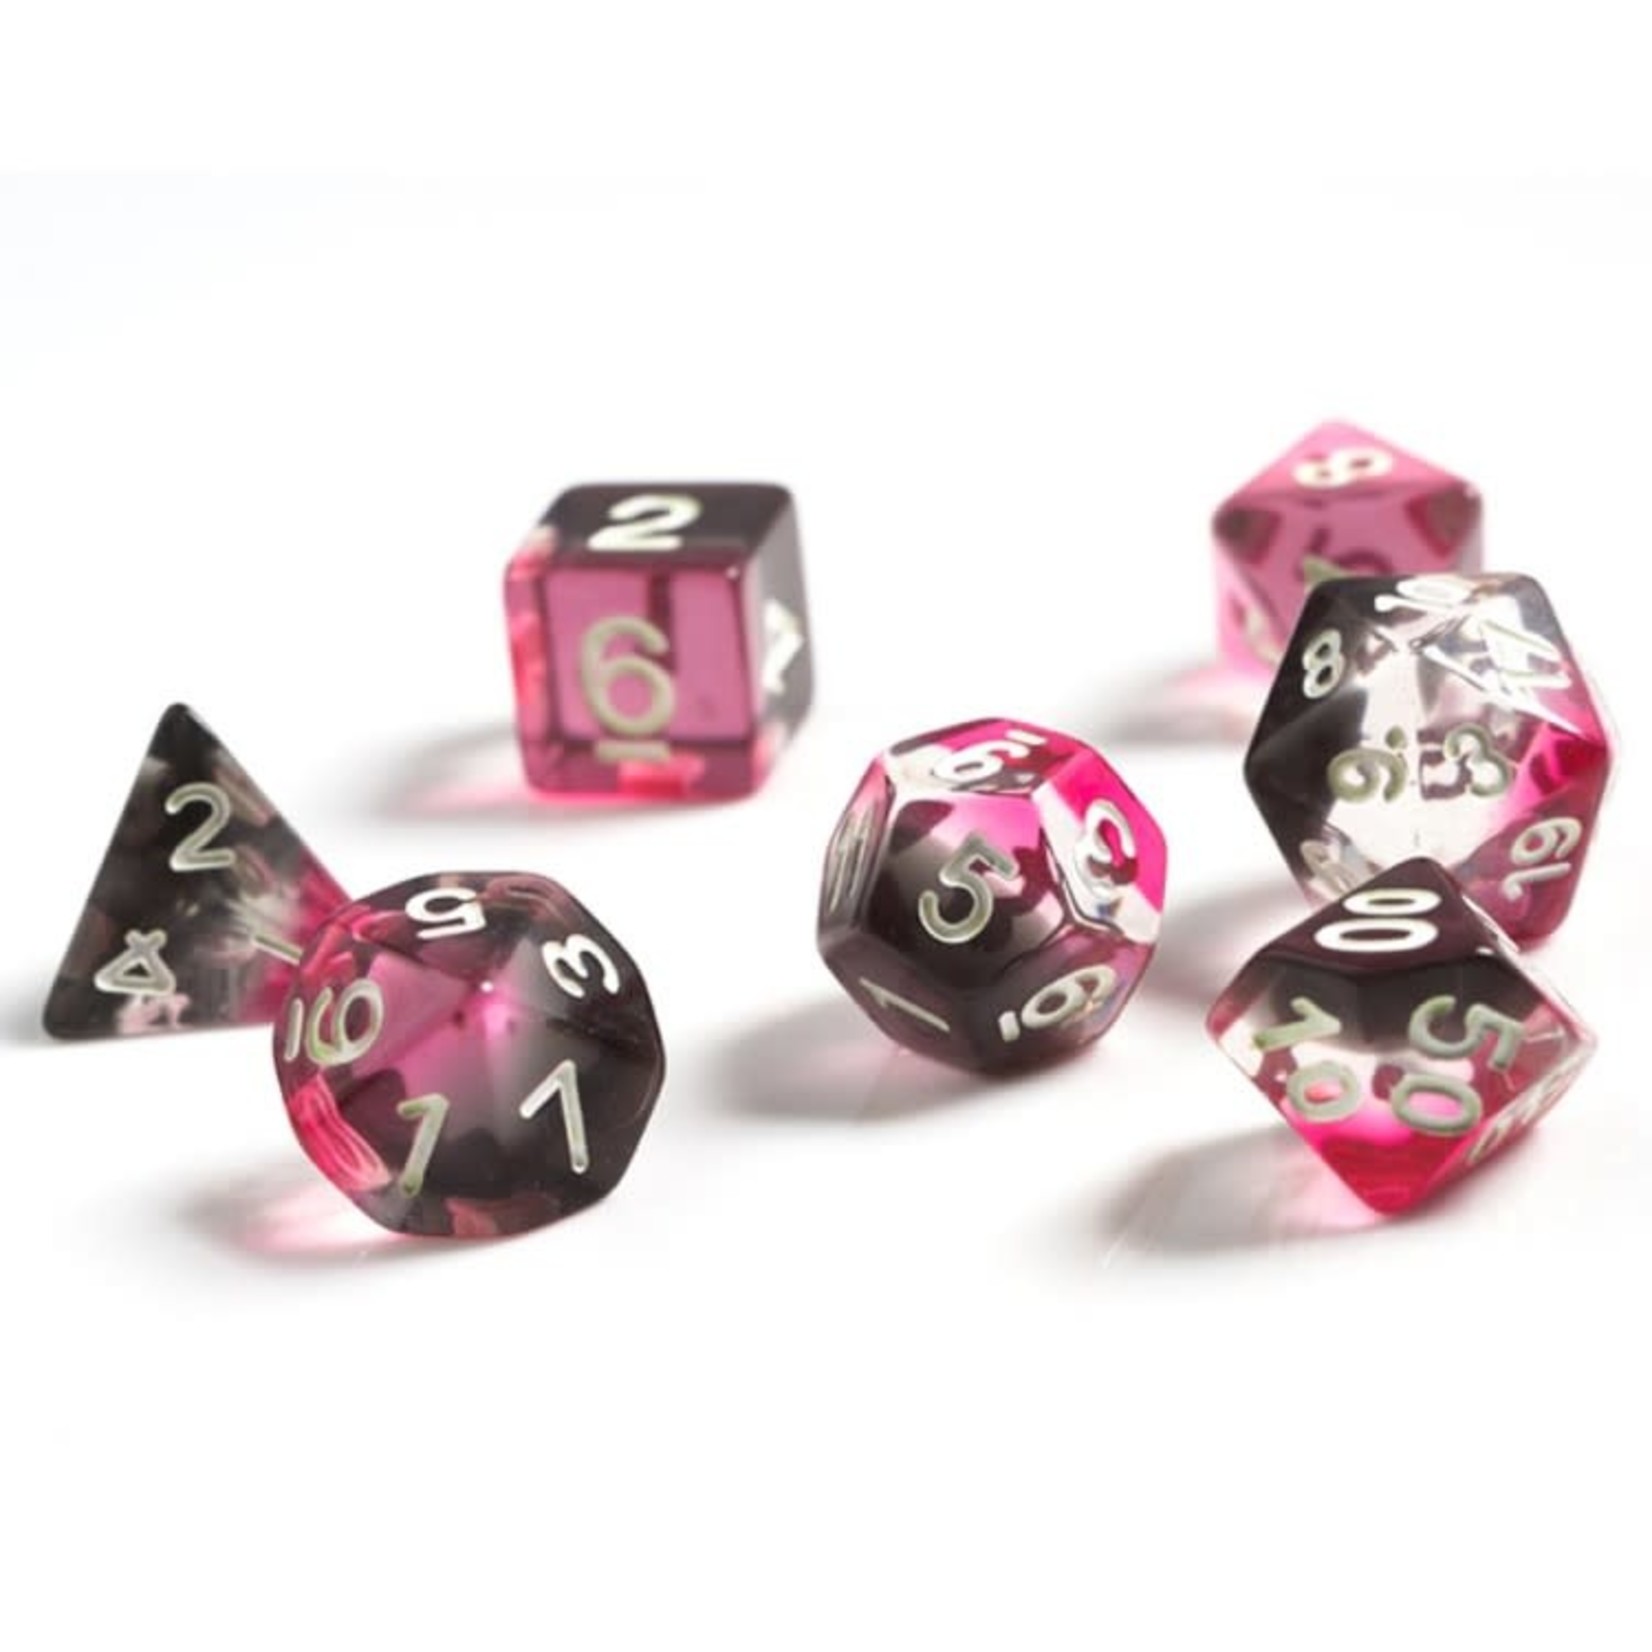 Sirius RPG Dice Pink / Clear / Black with White Polyhedral 8 die set